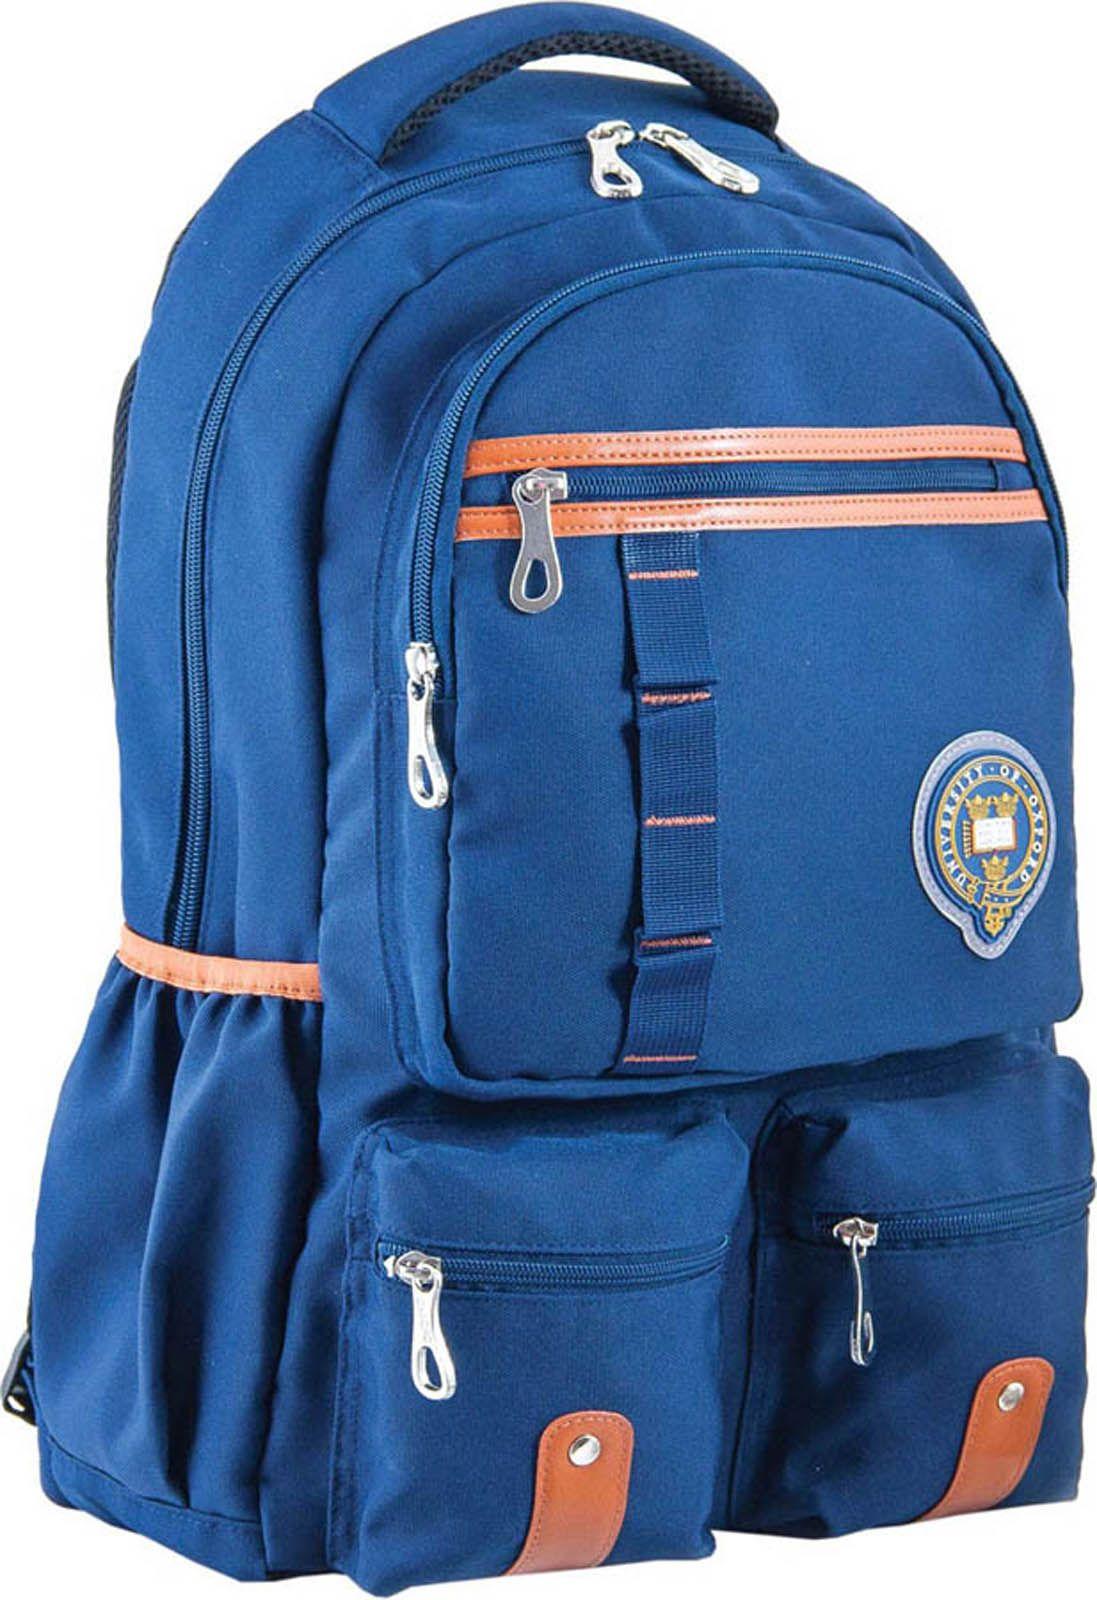 Рюкзак подростковый YES  OX 292, синий, 30*47*14.5